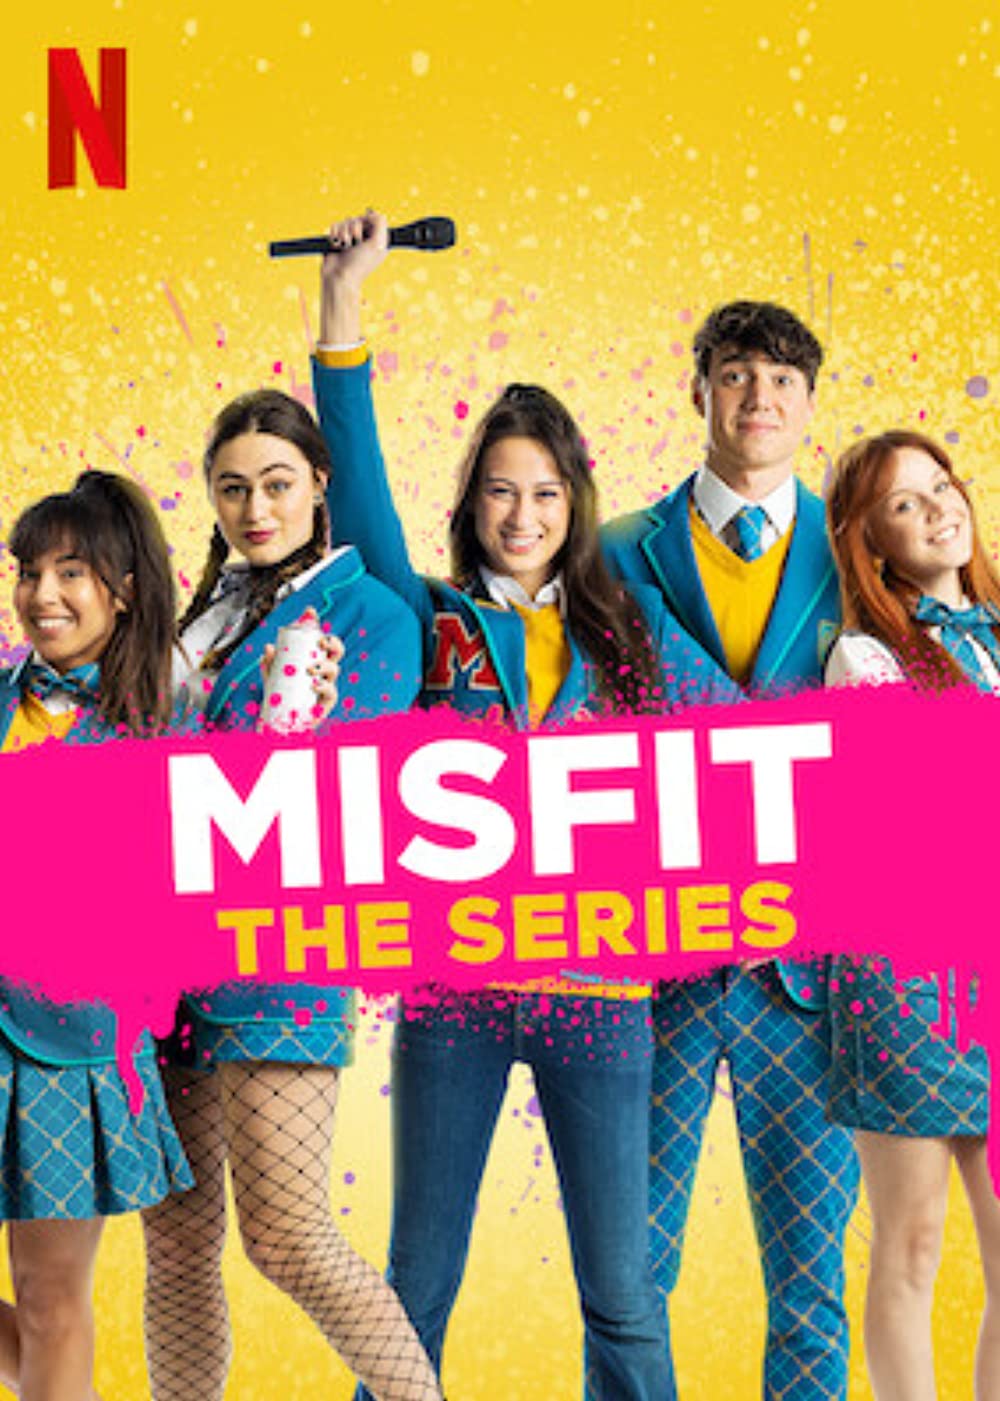 ดูหนังออนไลน์ฟรี MisFit The Series (2021) Episode1 มิสฟิช เดอะ ซีรี่ย์ ตอนที่ 1